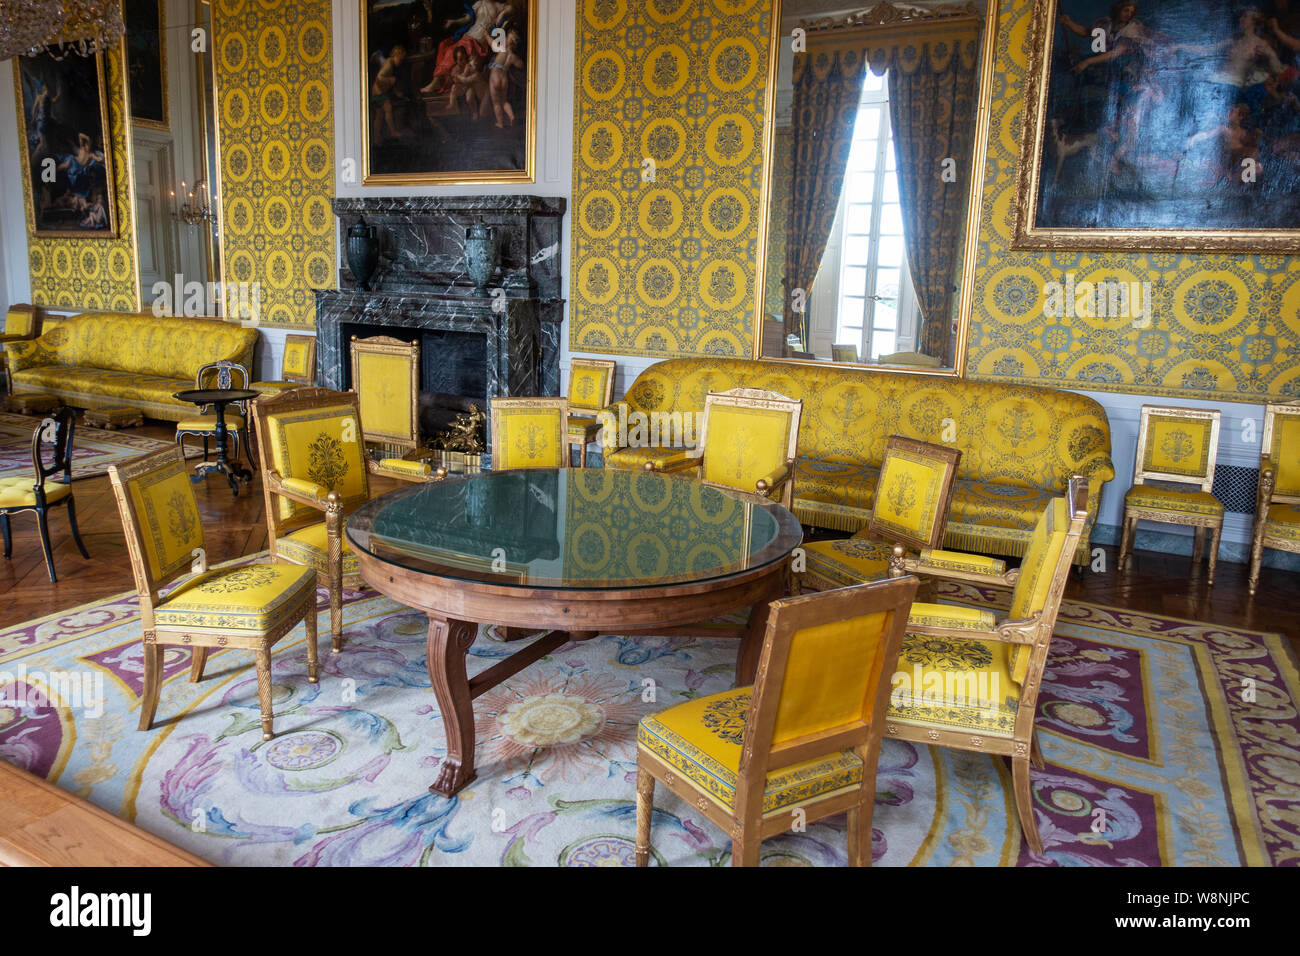 Einer der vielen Salons innerhalb des Grand Trianon Palace - Palast von Versailles Yvelines, Region Île-de-France Frankreich Stockfoto